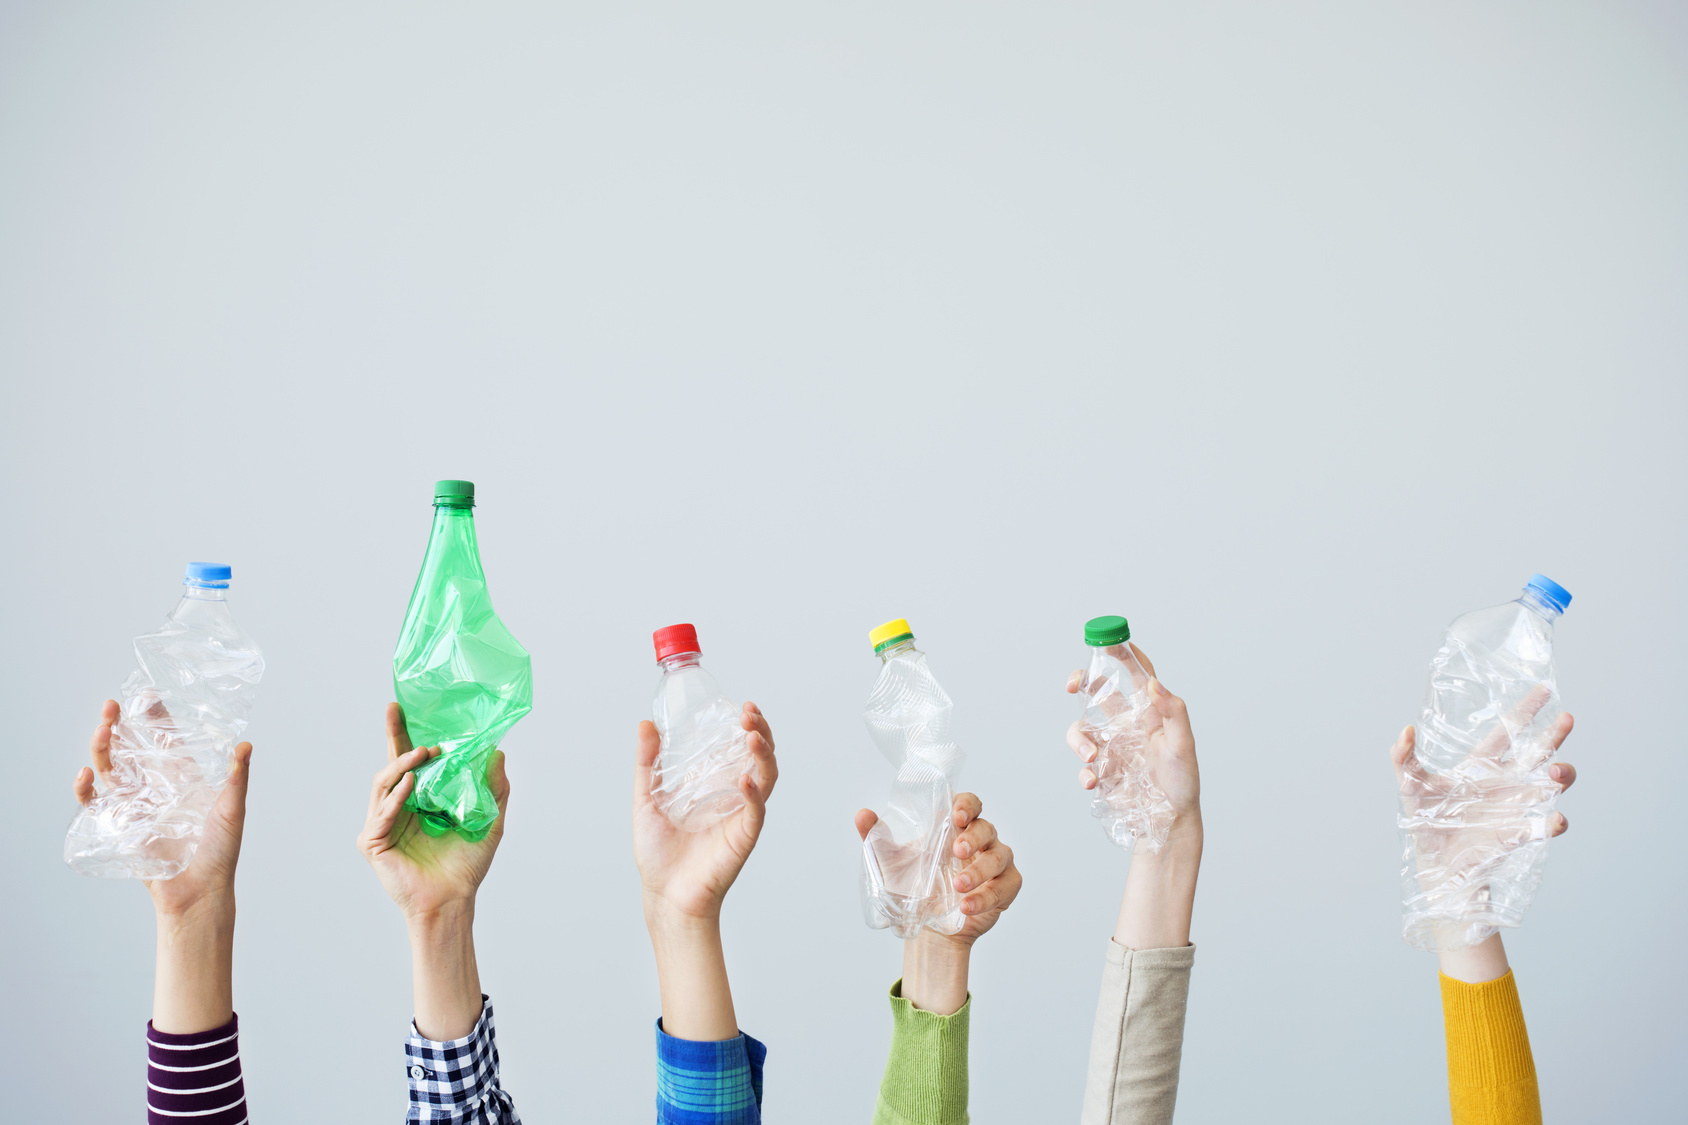 Mani che tengono bottiglie di plastica schiacciate su sfondo bianco; concept: riciclo, raccolta differenziata, vuoto a rendere, deposito cauzionale